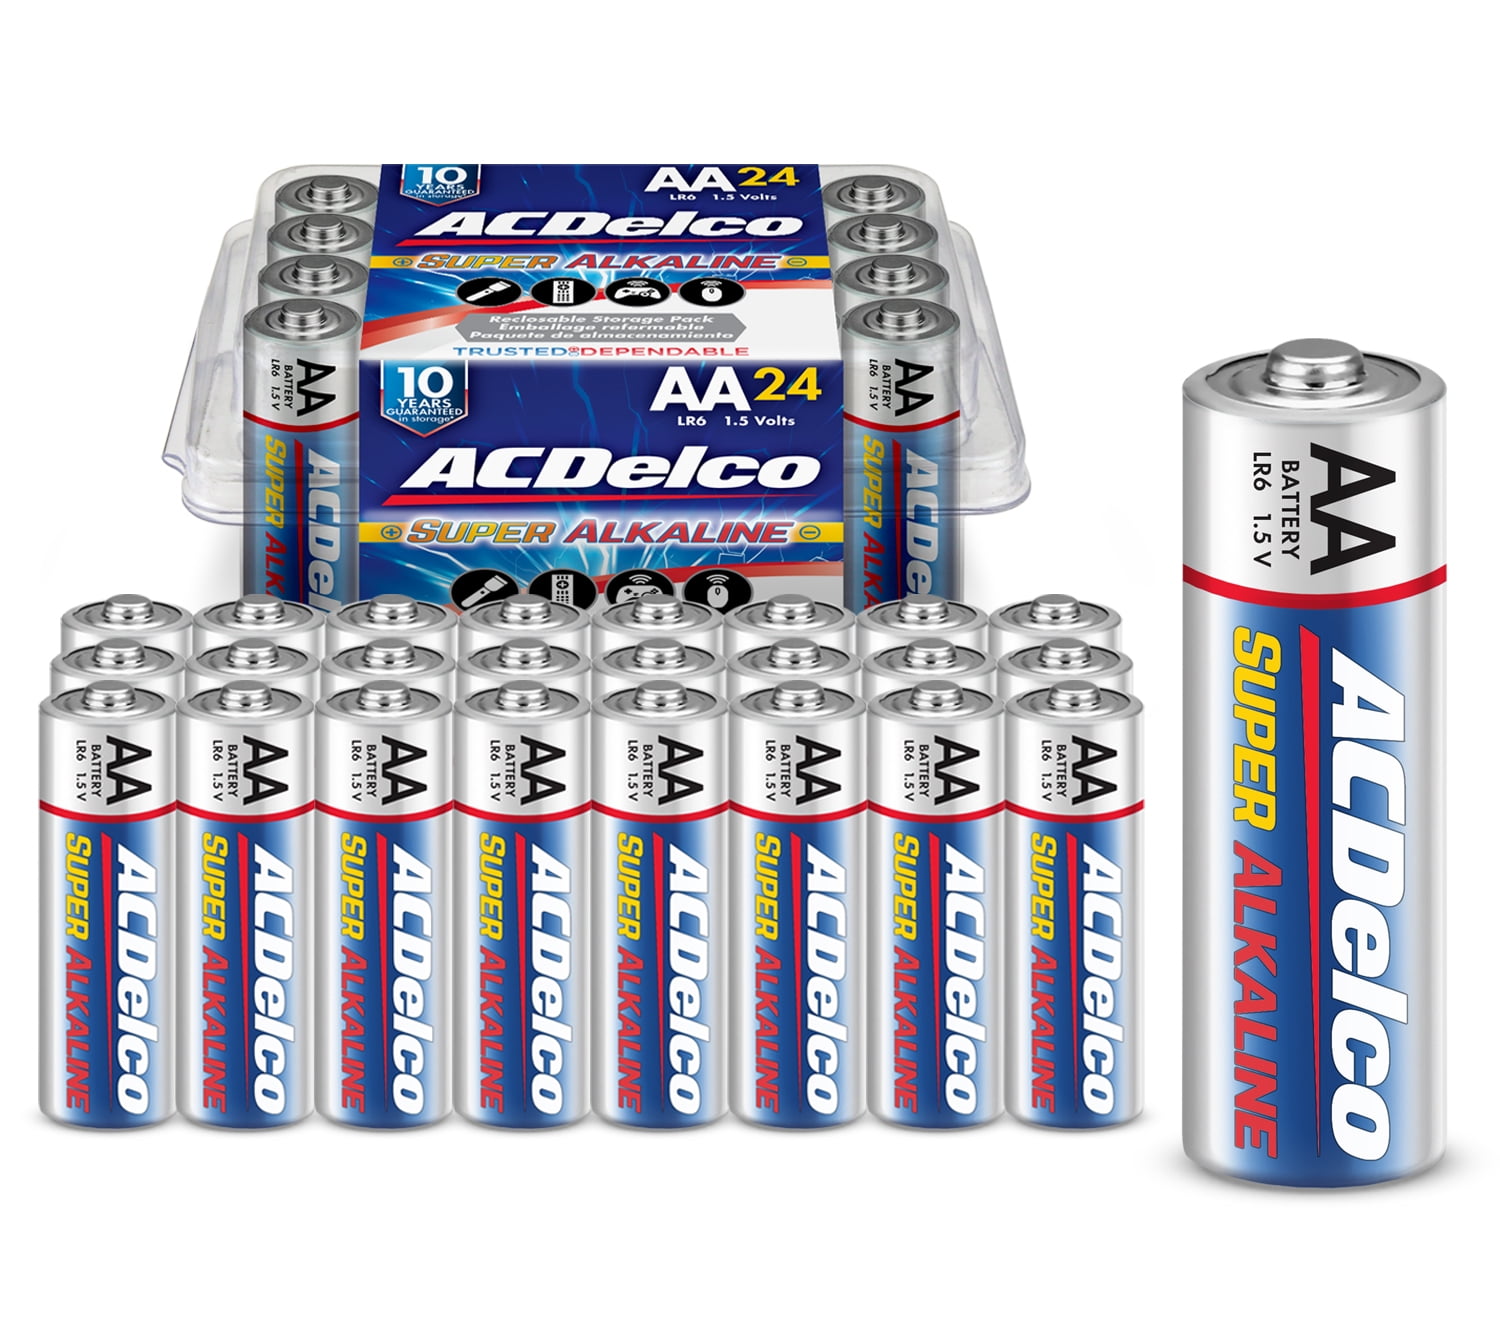 Super alkaline batteries. Трофи Energy Power Alkaline Batteries.